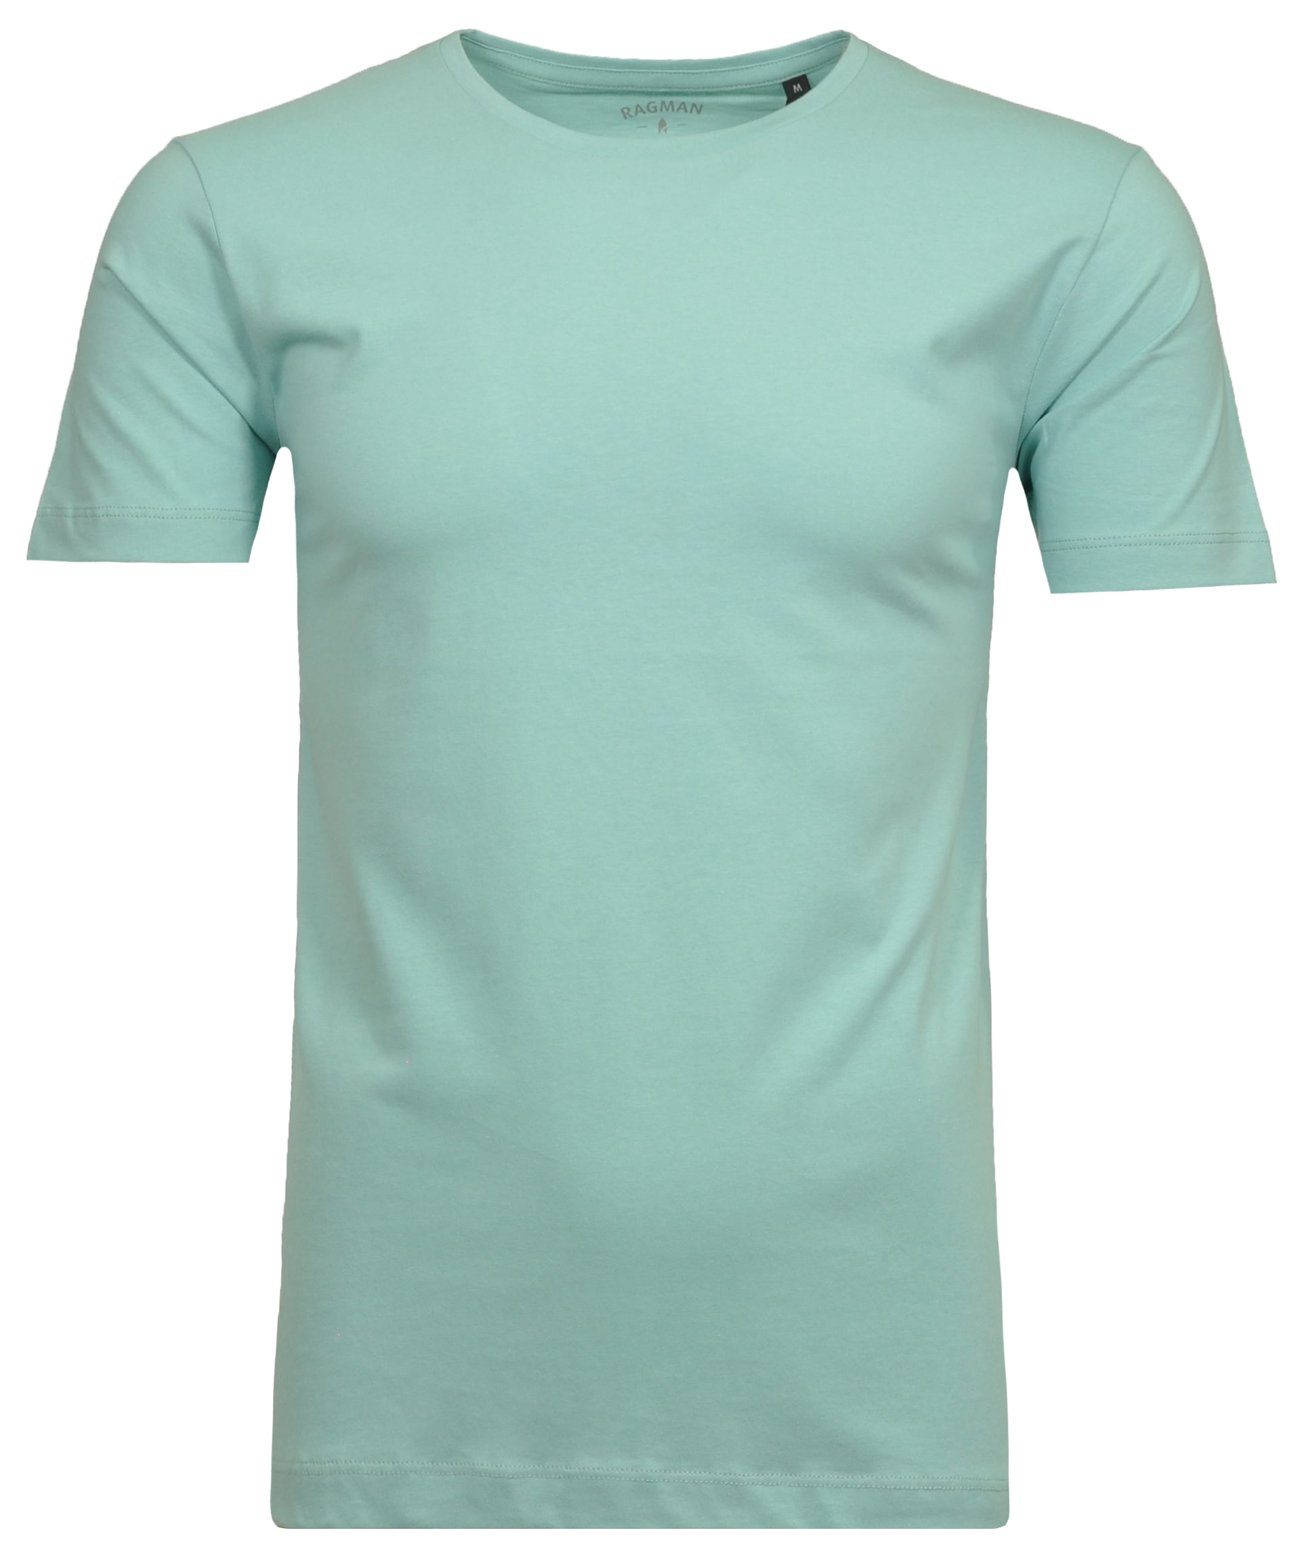 RAGMAN Longshirt Türkis-367 | T-Shirts